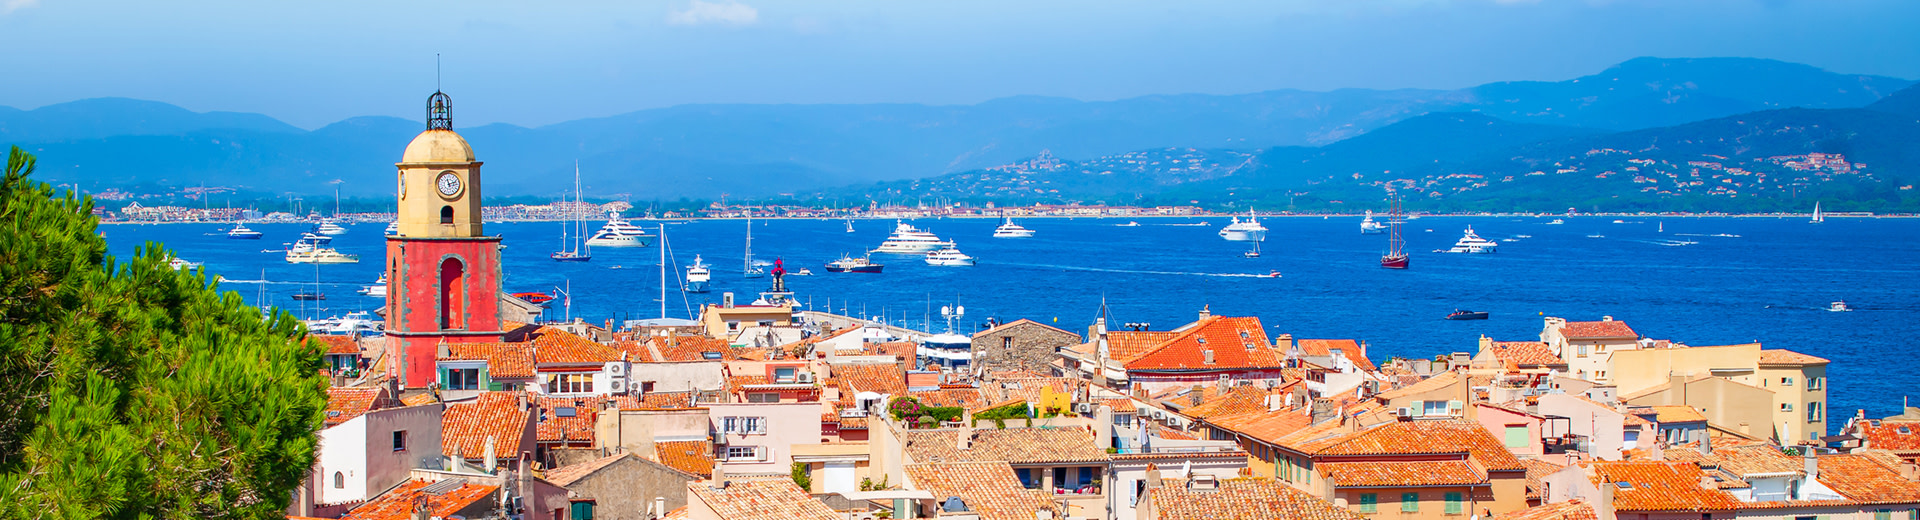 Ein Hafenblick auf Saint Tropez mit einem Kirchenruhe und Dächern im Vordergrund und blauem Wasser, das mit Booten im Hintergrund übersät ist.